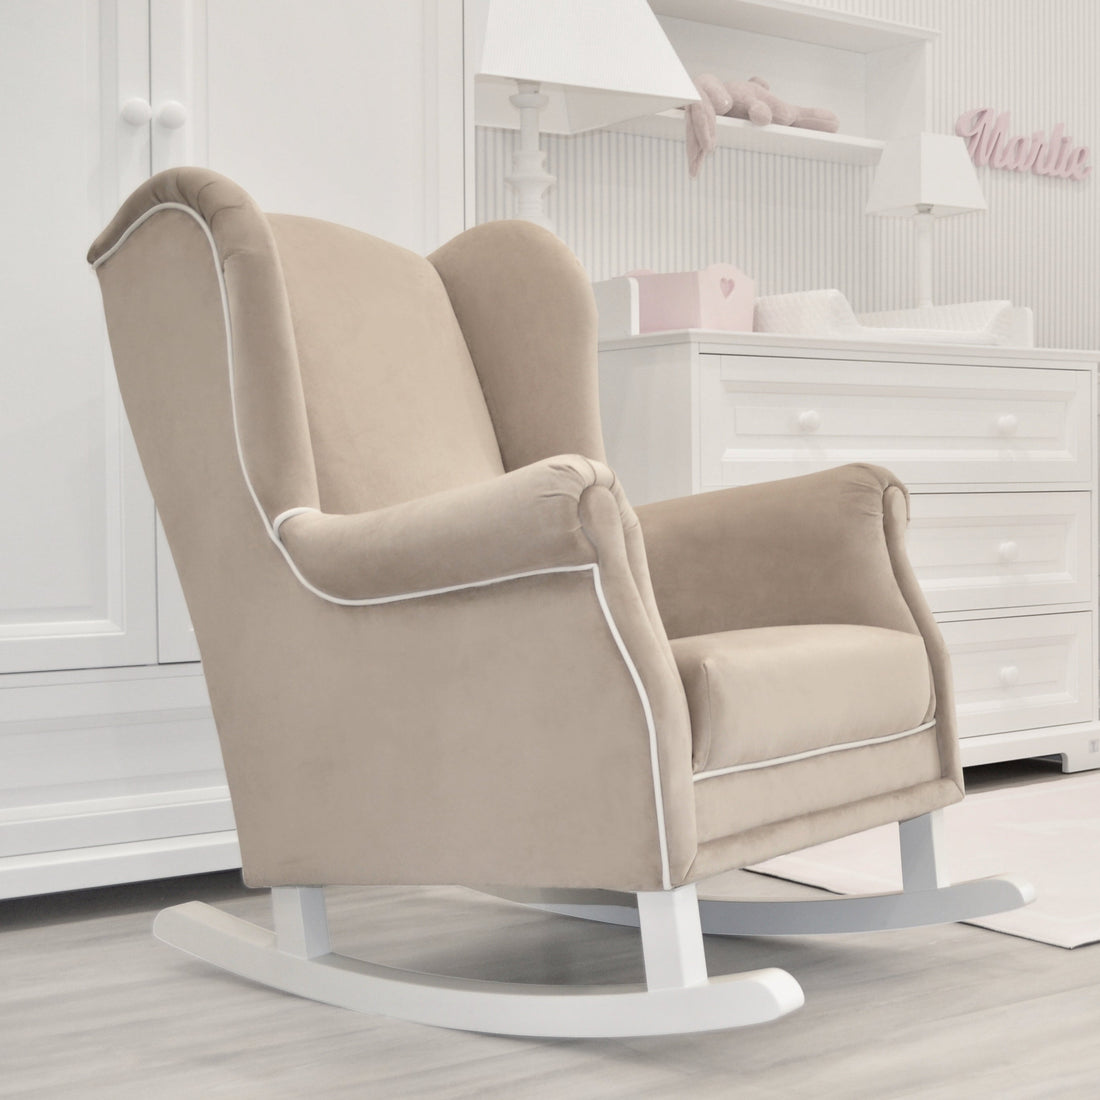 Rocking nursing chair PRESTIGE sand beige | handcrafted rocking nursing chair | luxury baby furniture | beige nursing rocking chair